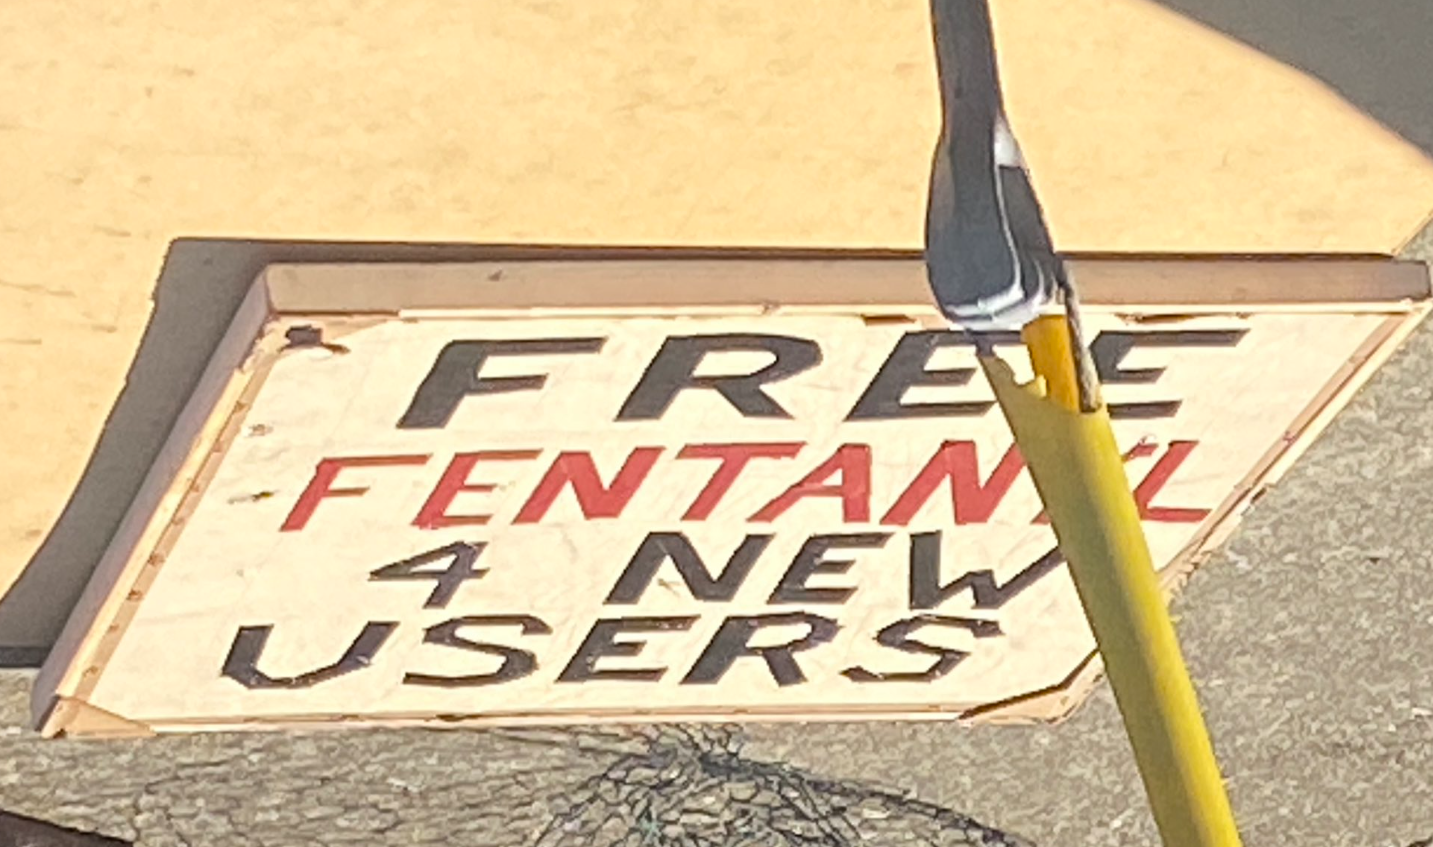 Pederasta convicto montó campamento frente a una primaria de San Francisco con el cartel “fentanilo gratis”